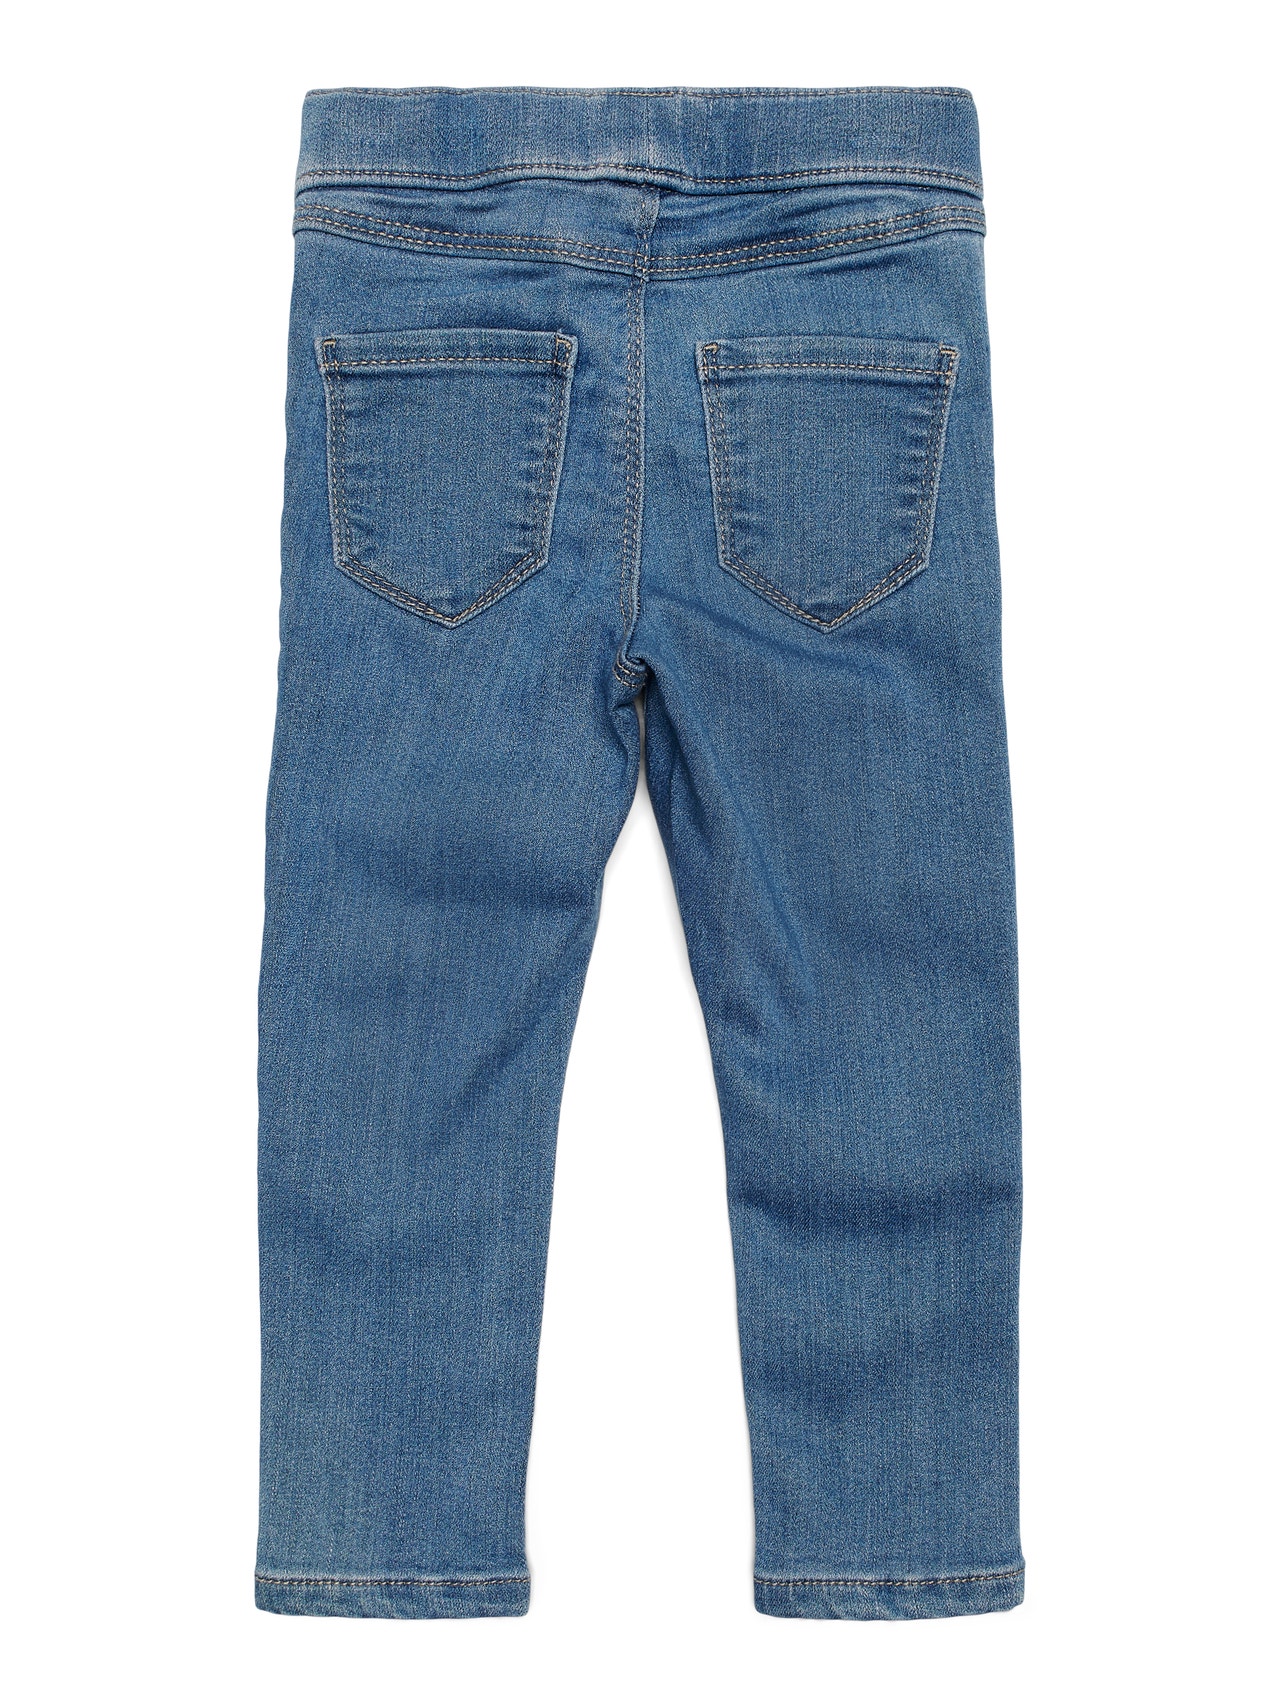 ONLY Jegging Fit Jeans -Medium Blue Denim - 15249240